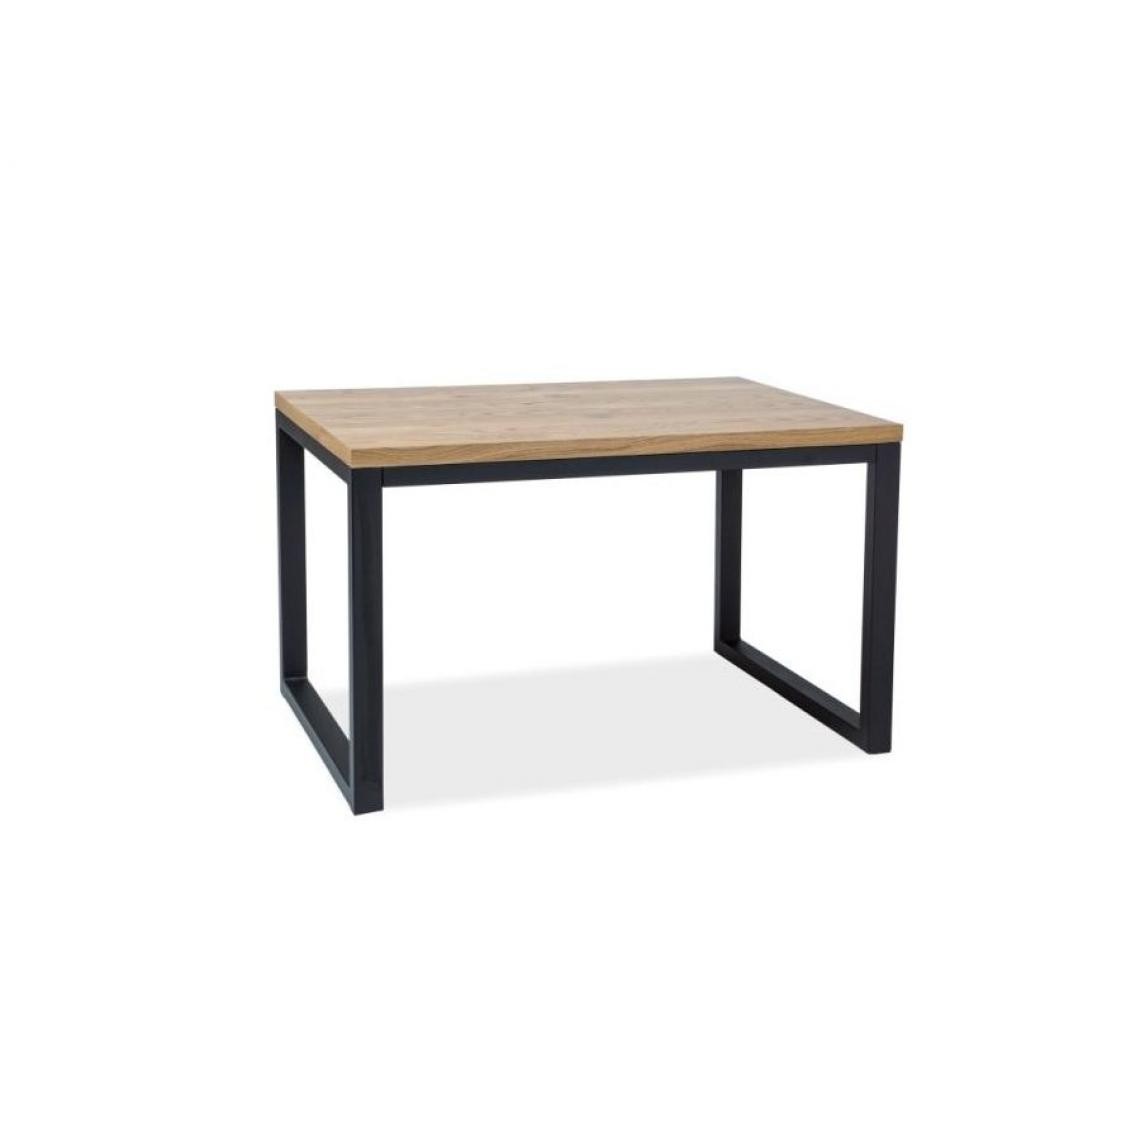 Hucoco - LORAD - Table moderne avec un plateau en bois |120X80x77 cm - Bois massif - Table fixe - Piètement métal - Chêne - Tables à manger